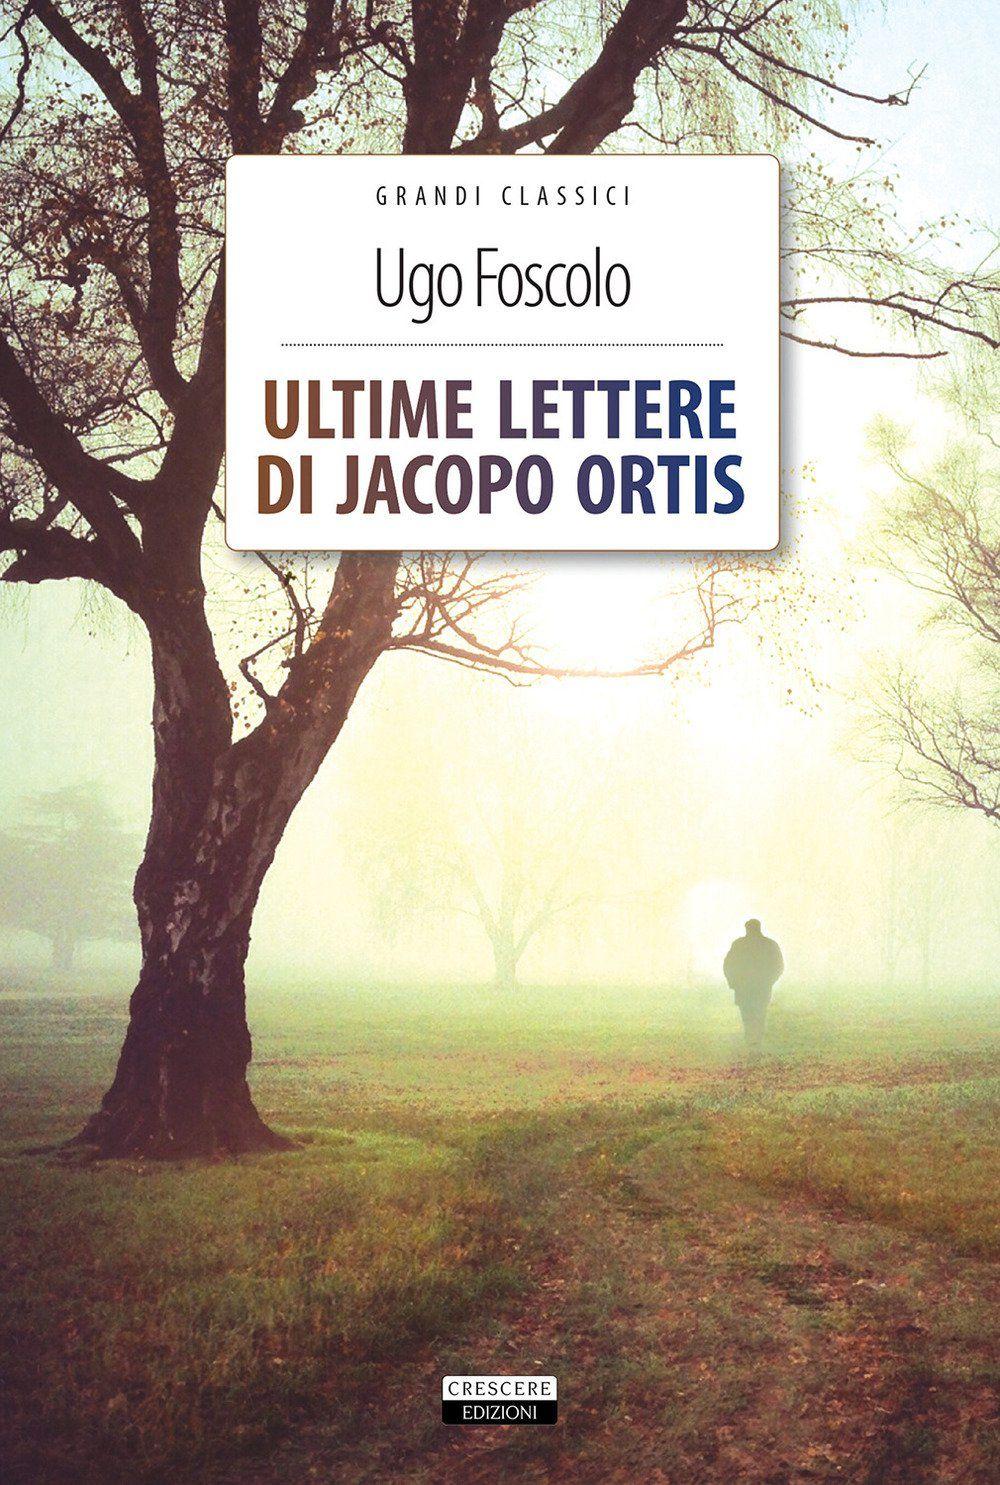 Libro "Ultime lettere di Jacopo Ortis" di Ugo Foscolo